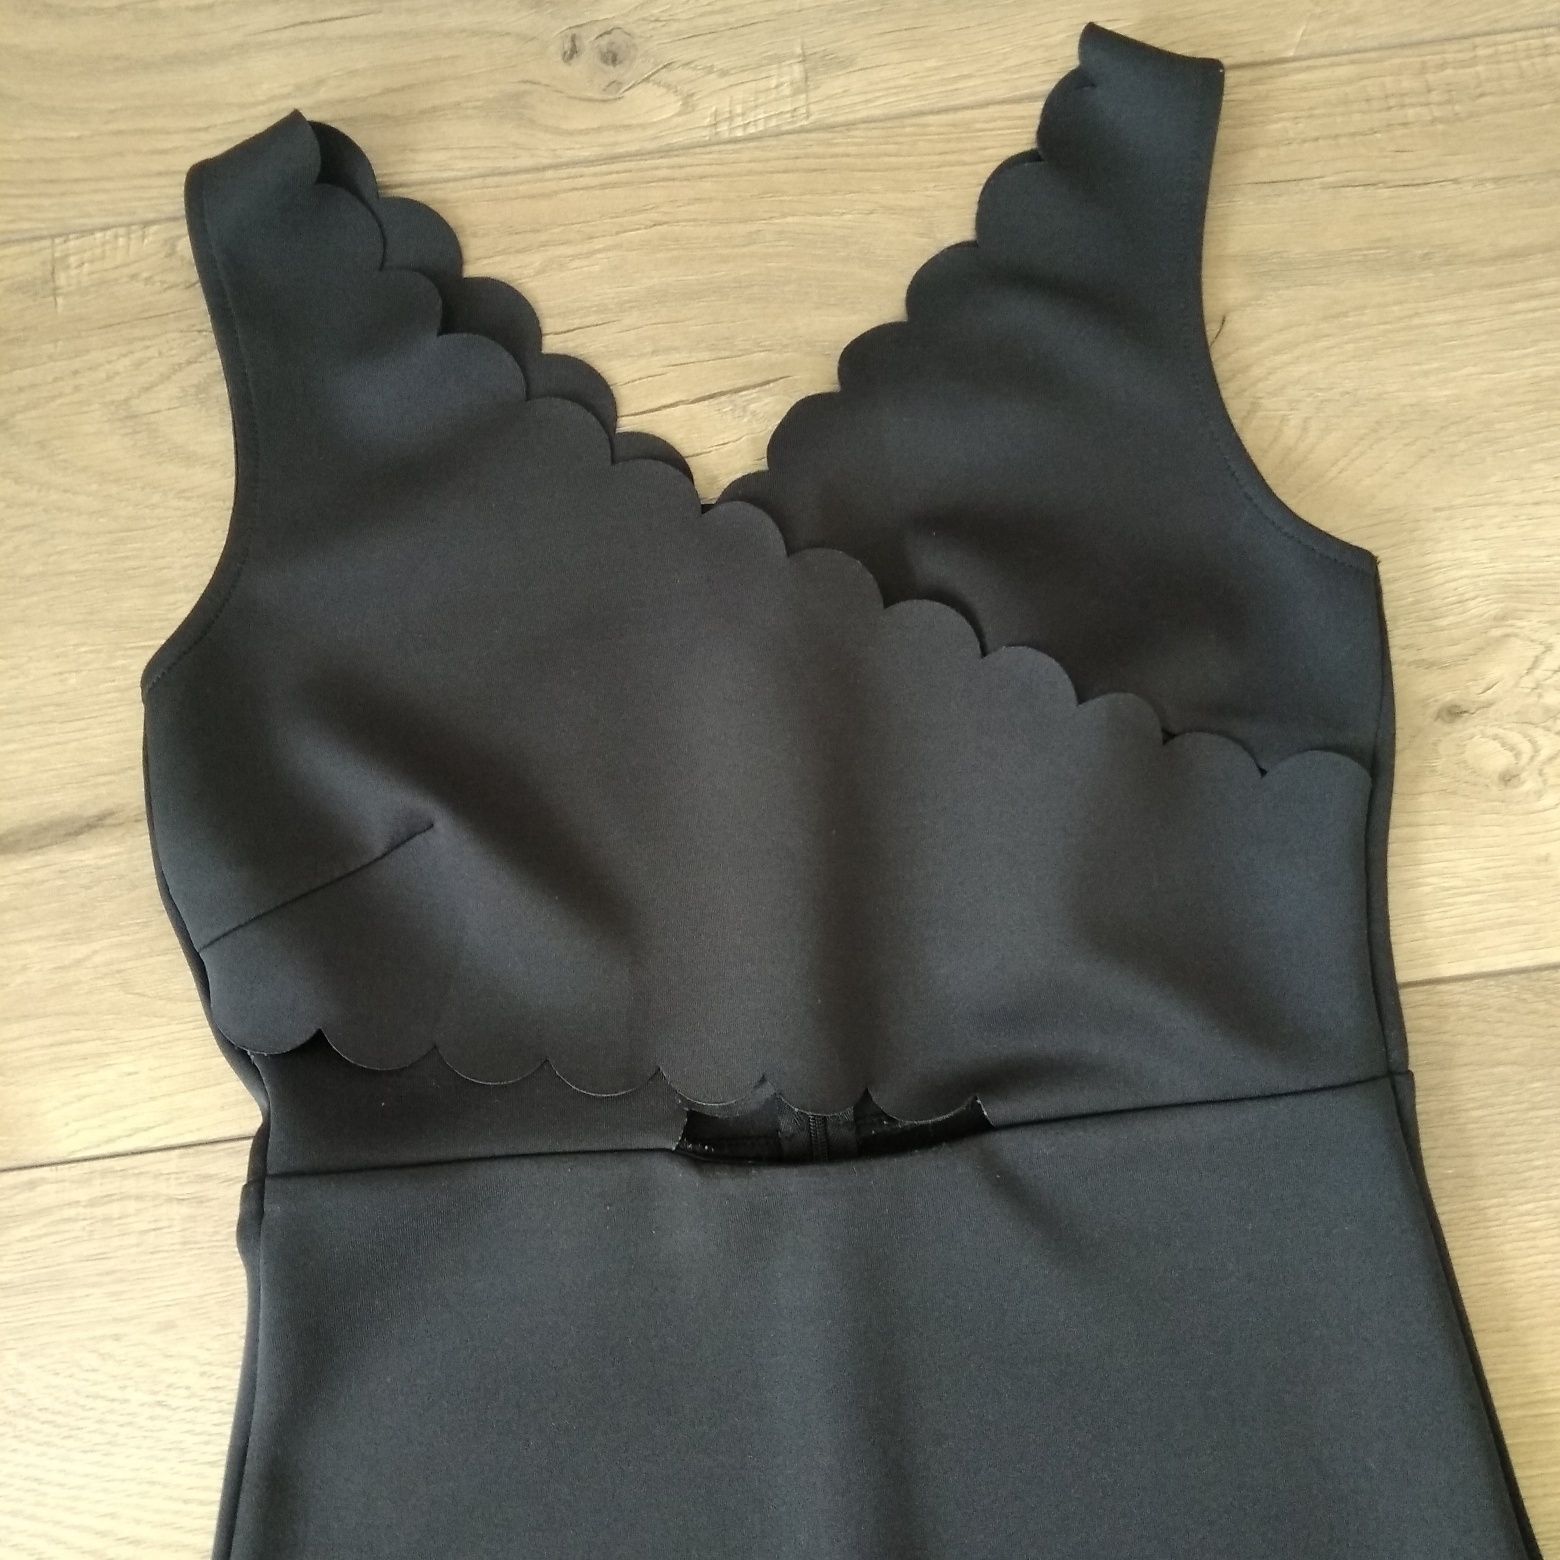 Sukienka mała czarna XS 34